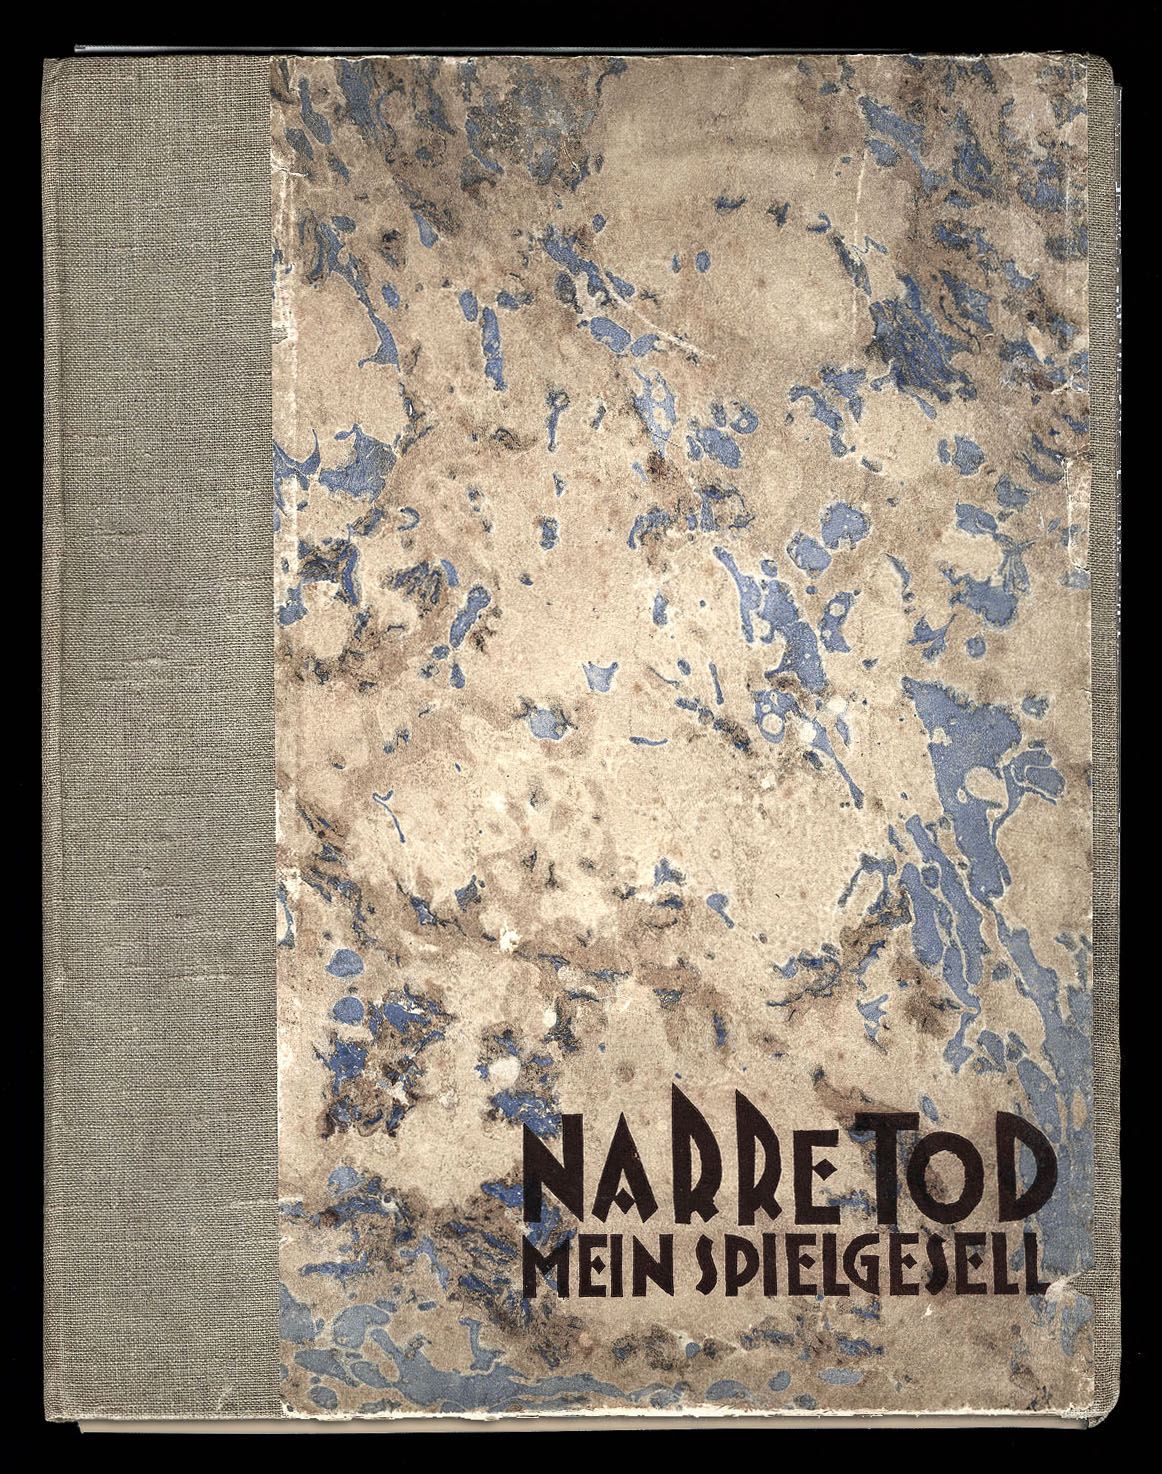 Narre Tod, Mein Spielgesell Fool Death, My Playmate Franz Fiedler, 1922